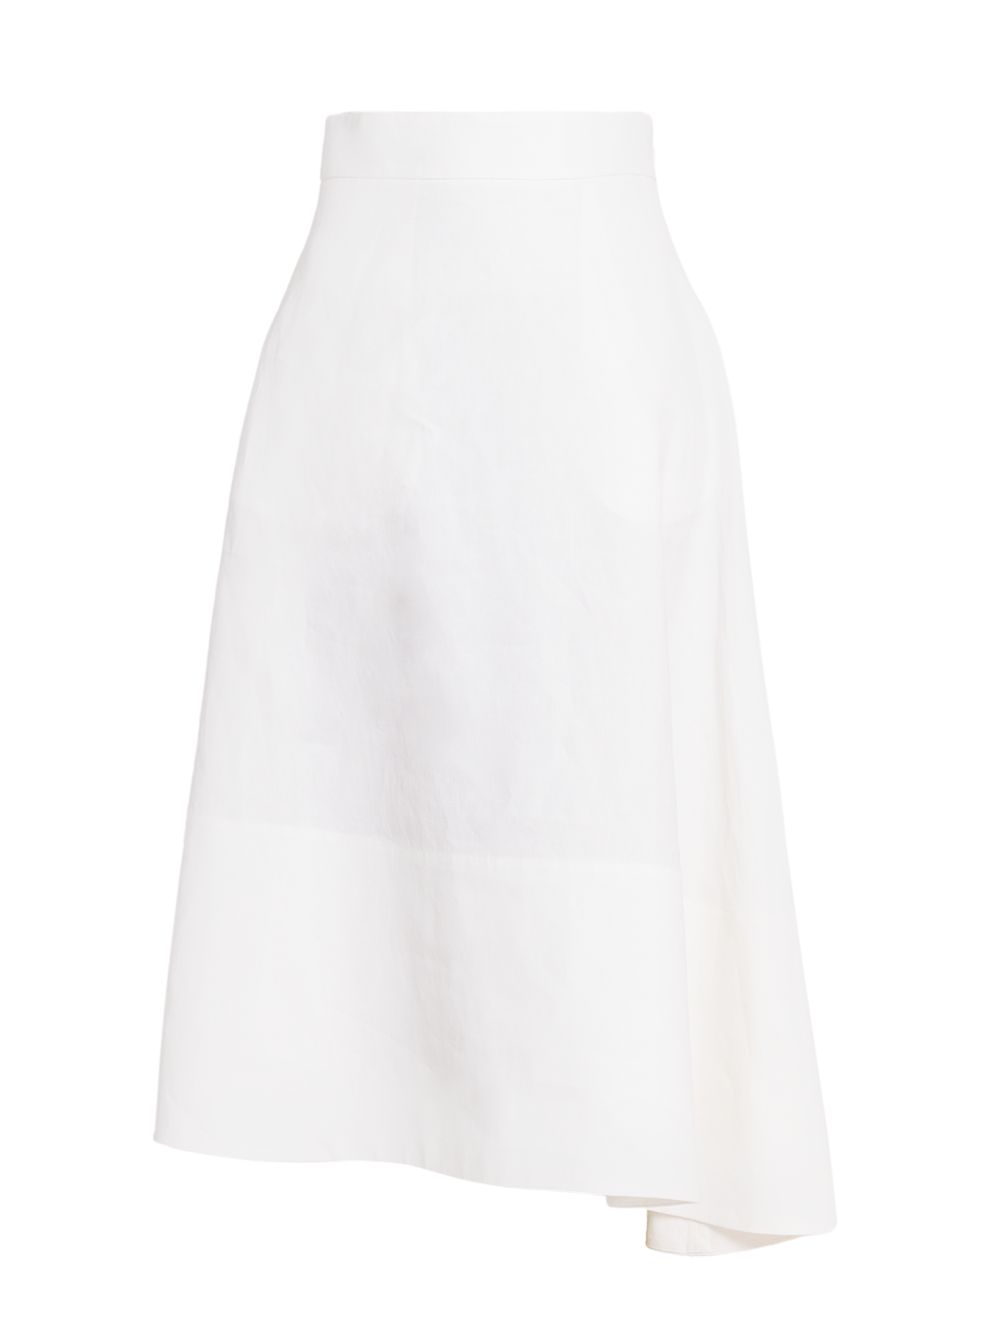 Асимметричная юбка миди из льна с покрытием Jil Sander, белый